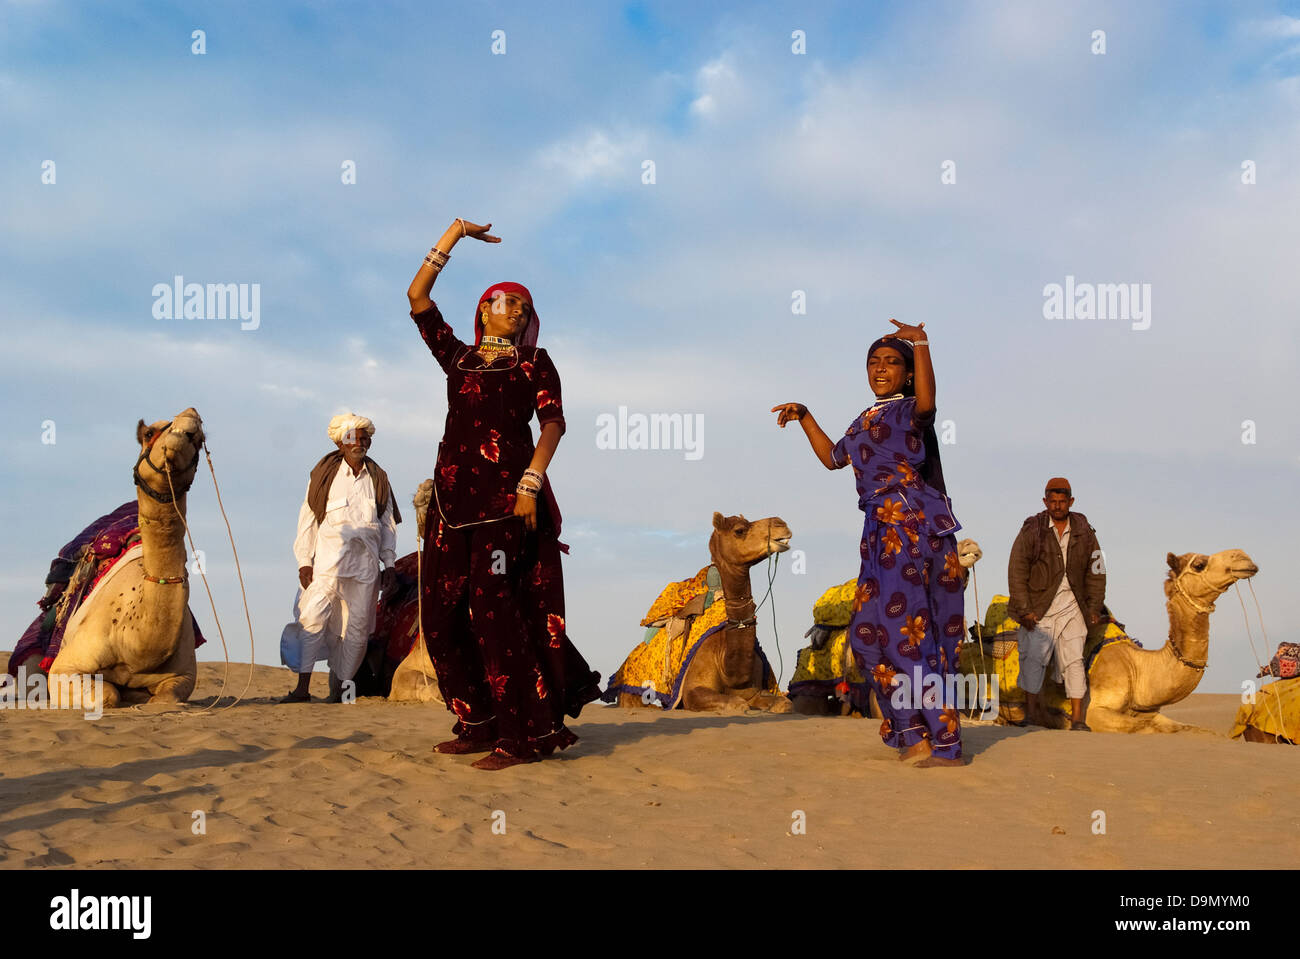 La danse culturelle à la Dune de sable de Sam à Jaisalmer, Inde. L'événement fait partie du Désert Festival. Banque D'Images